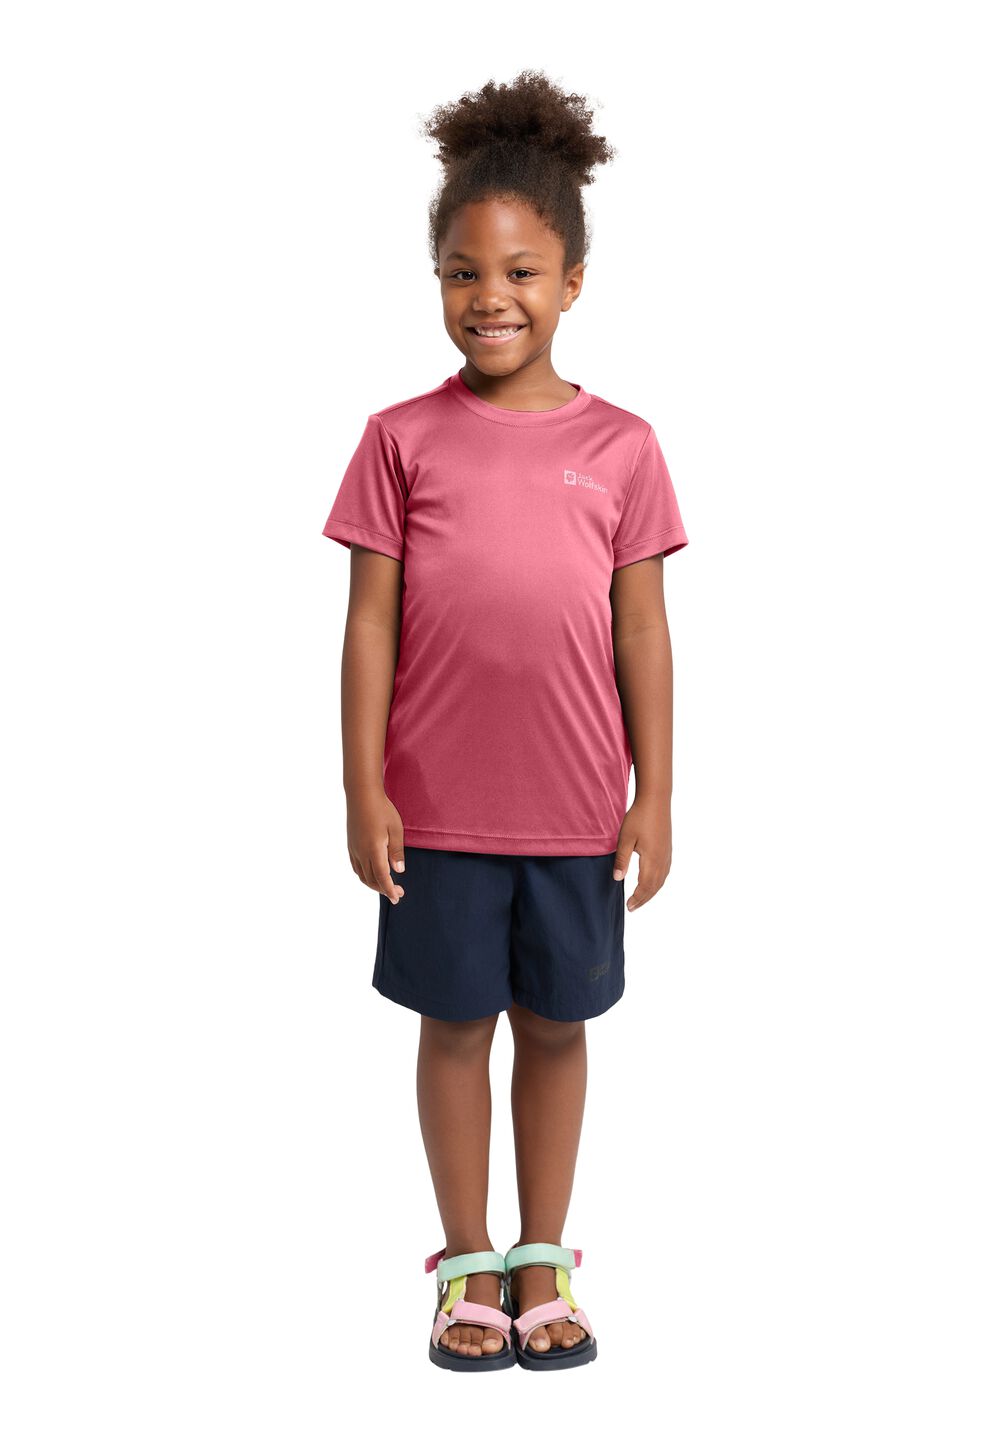 Jack Wolfskin Active Solid T-Shirt Kids Functioneel shirt Kinderen 176 soft pink soft pink